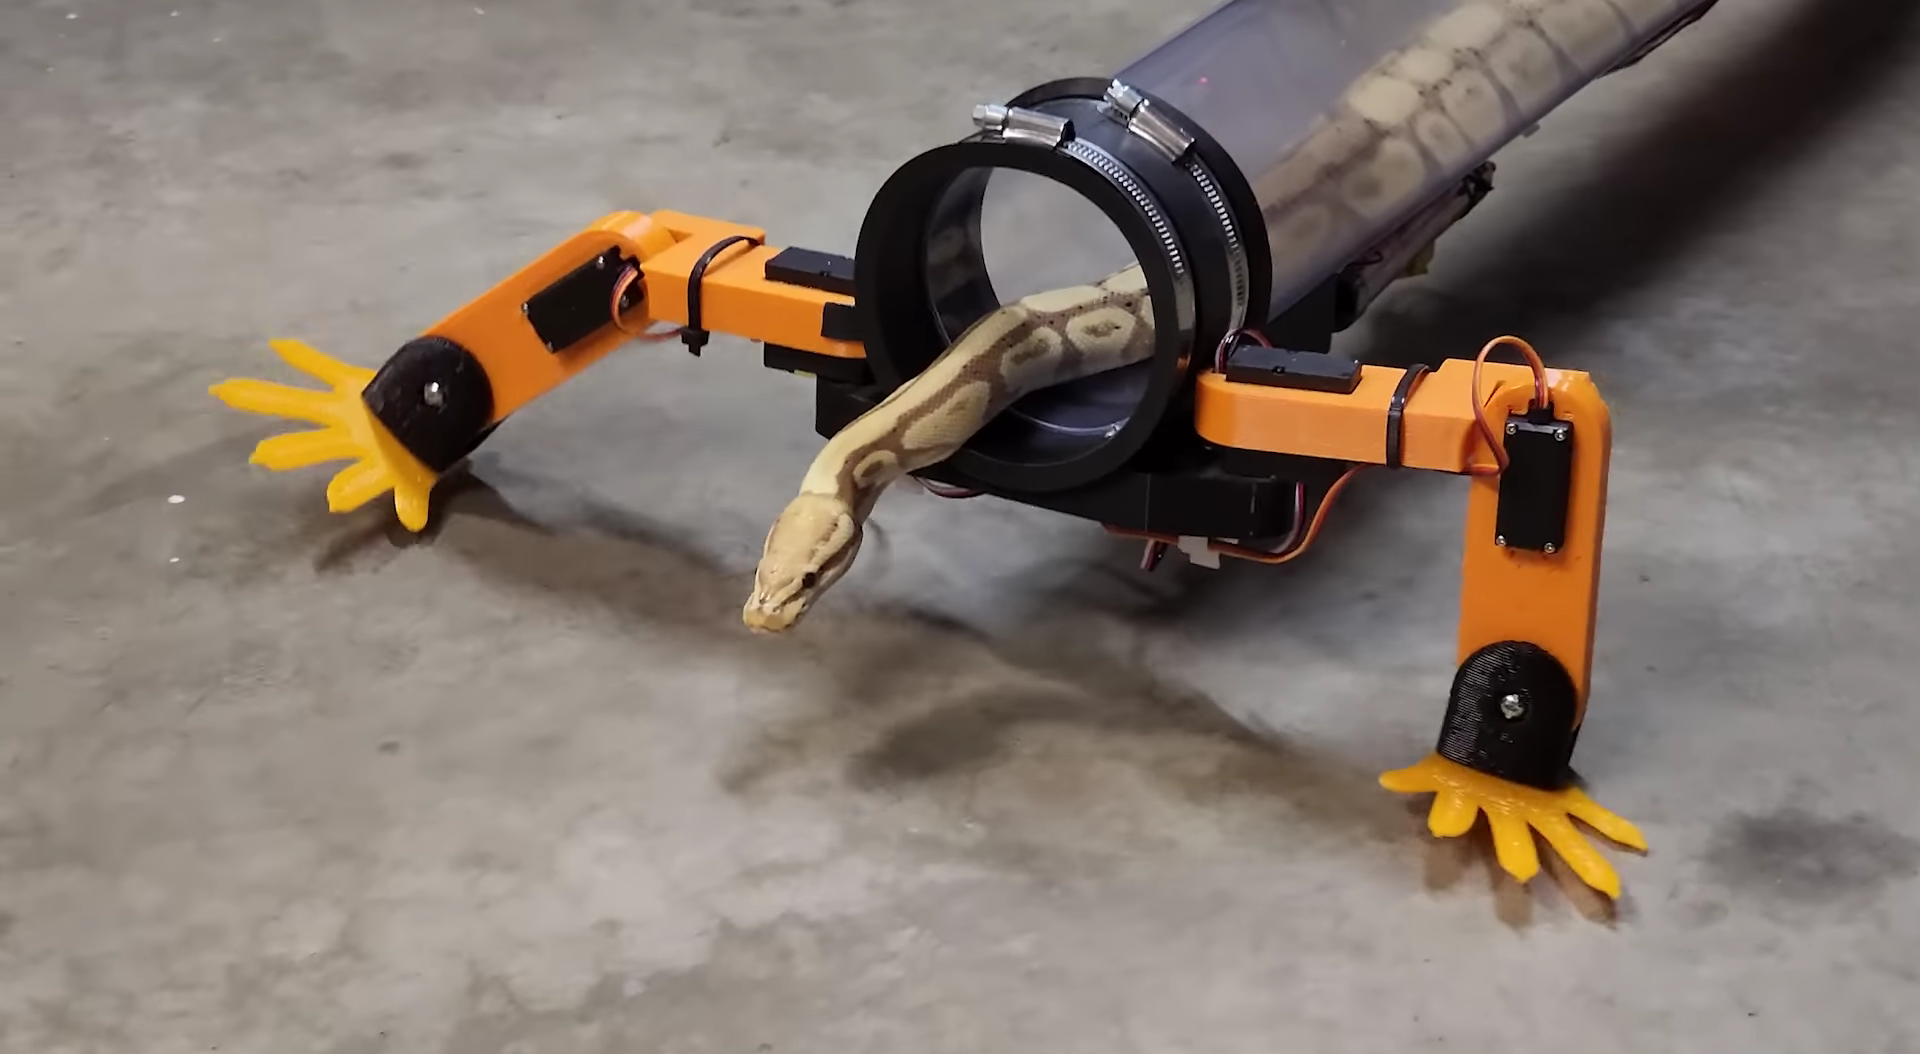 Un ingeniero desarrolló unas patas robóticas para una serpiente: le encantó